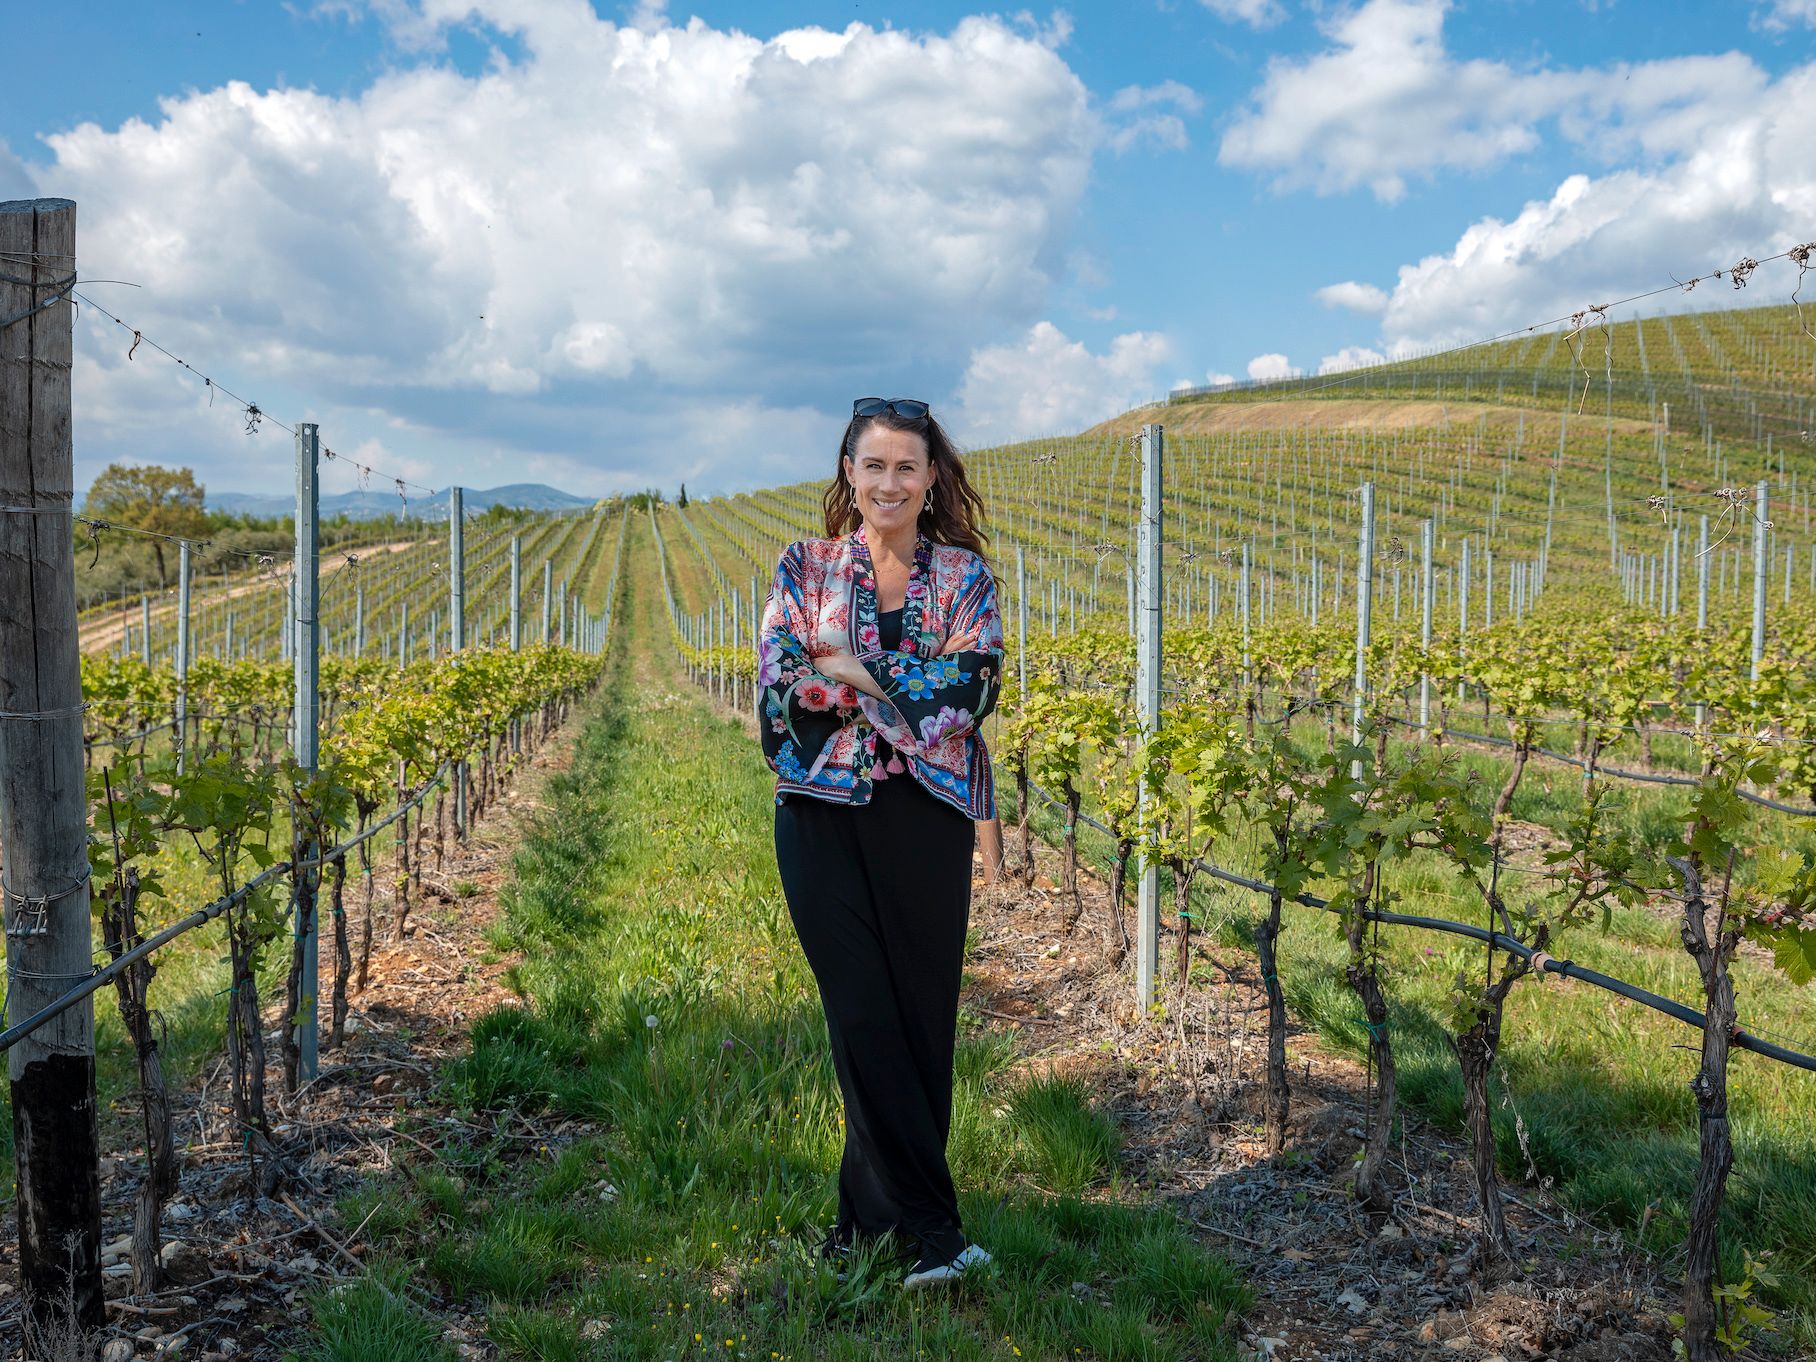 ”Vi har besökt några vingårdar, i USA, Italien och Grekland”, berättar Jill Johnsson.